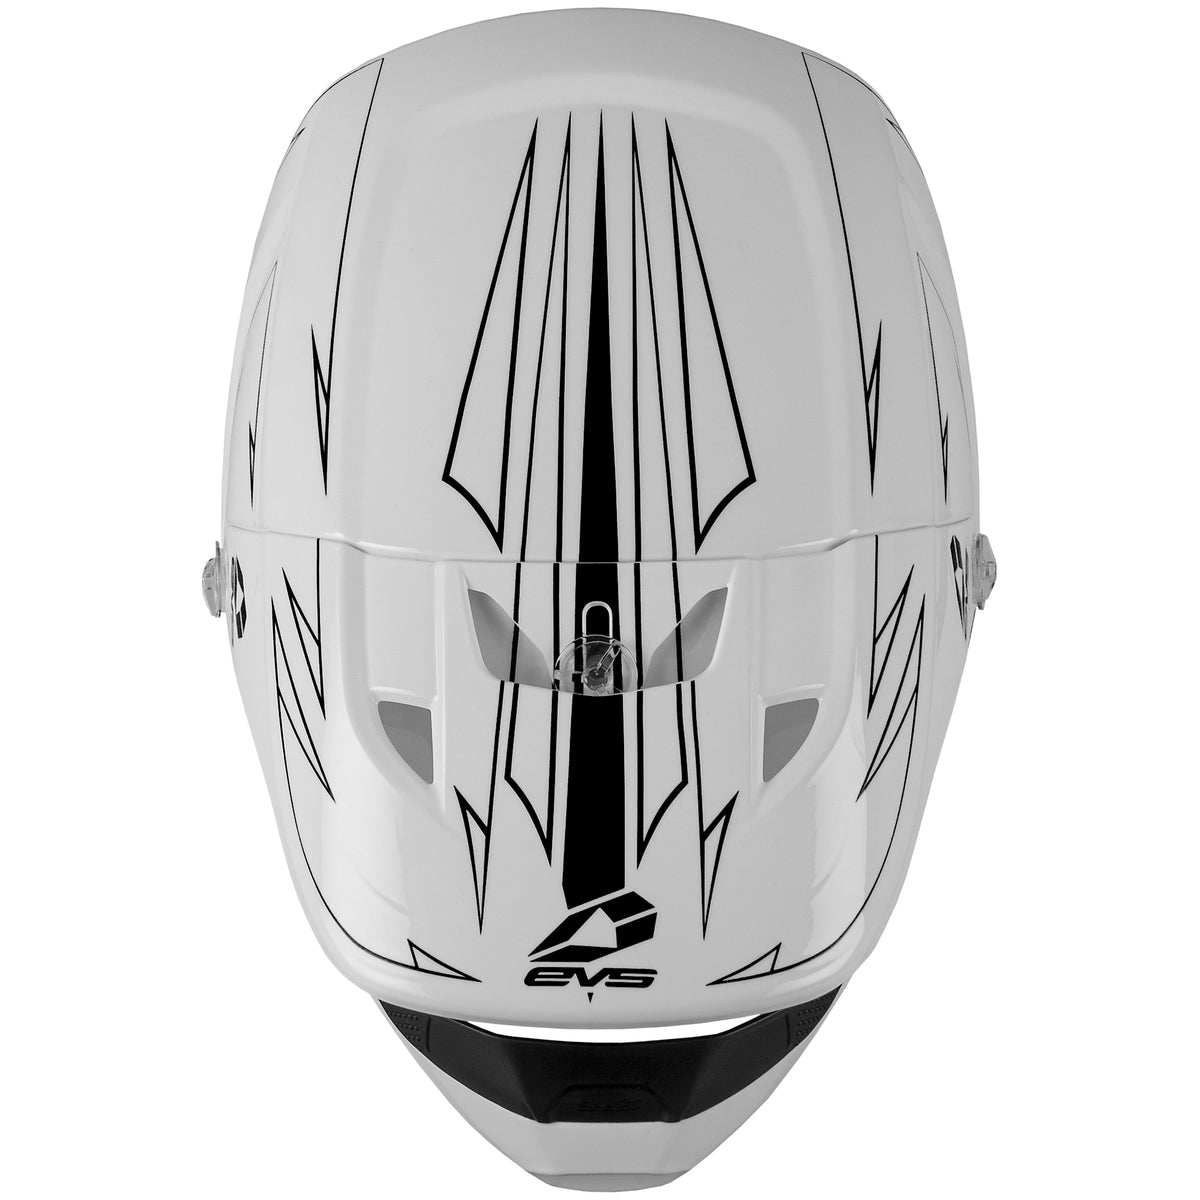 T3 Youth Helmet - Pinner White - EVS Sports